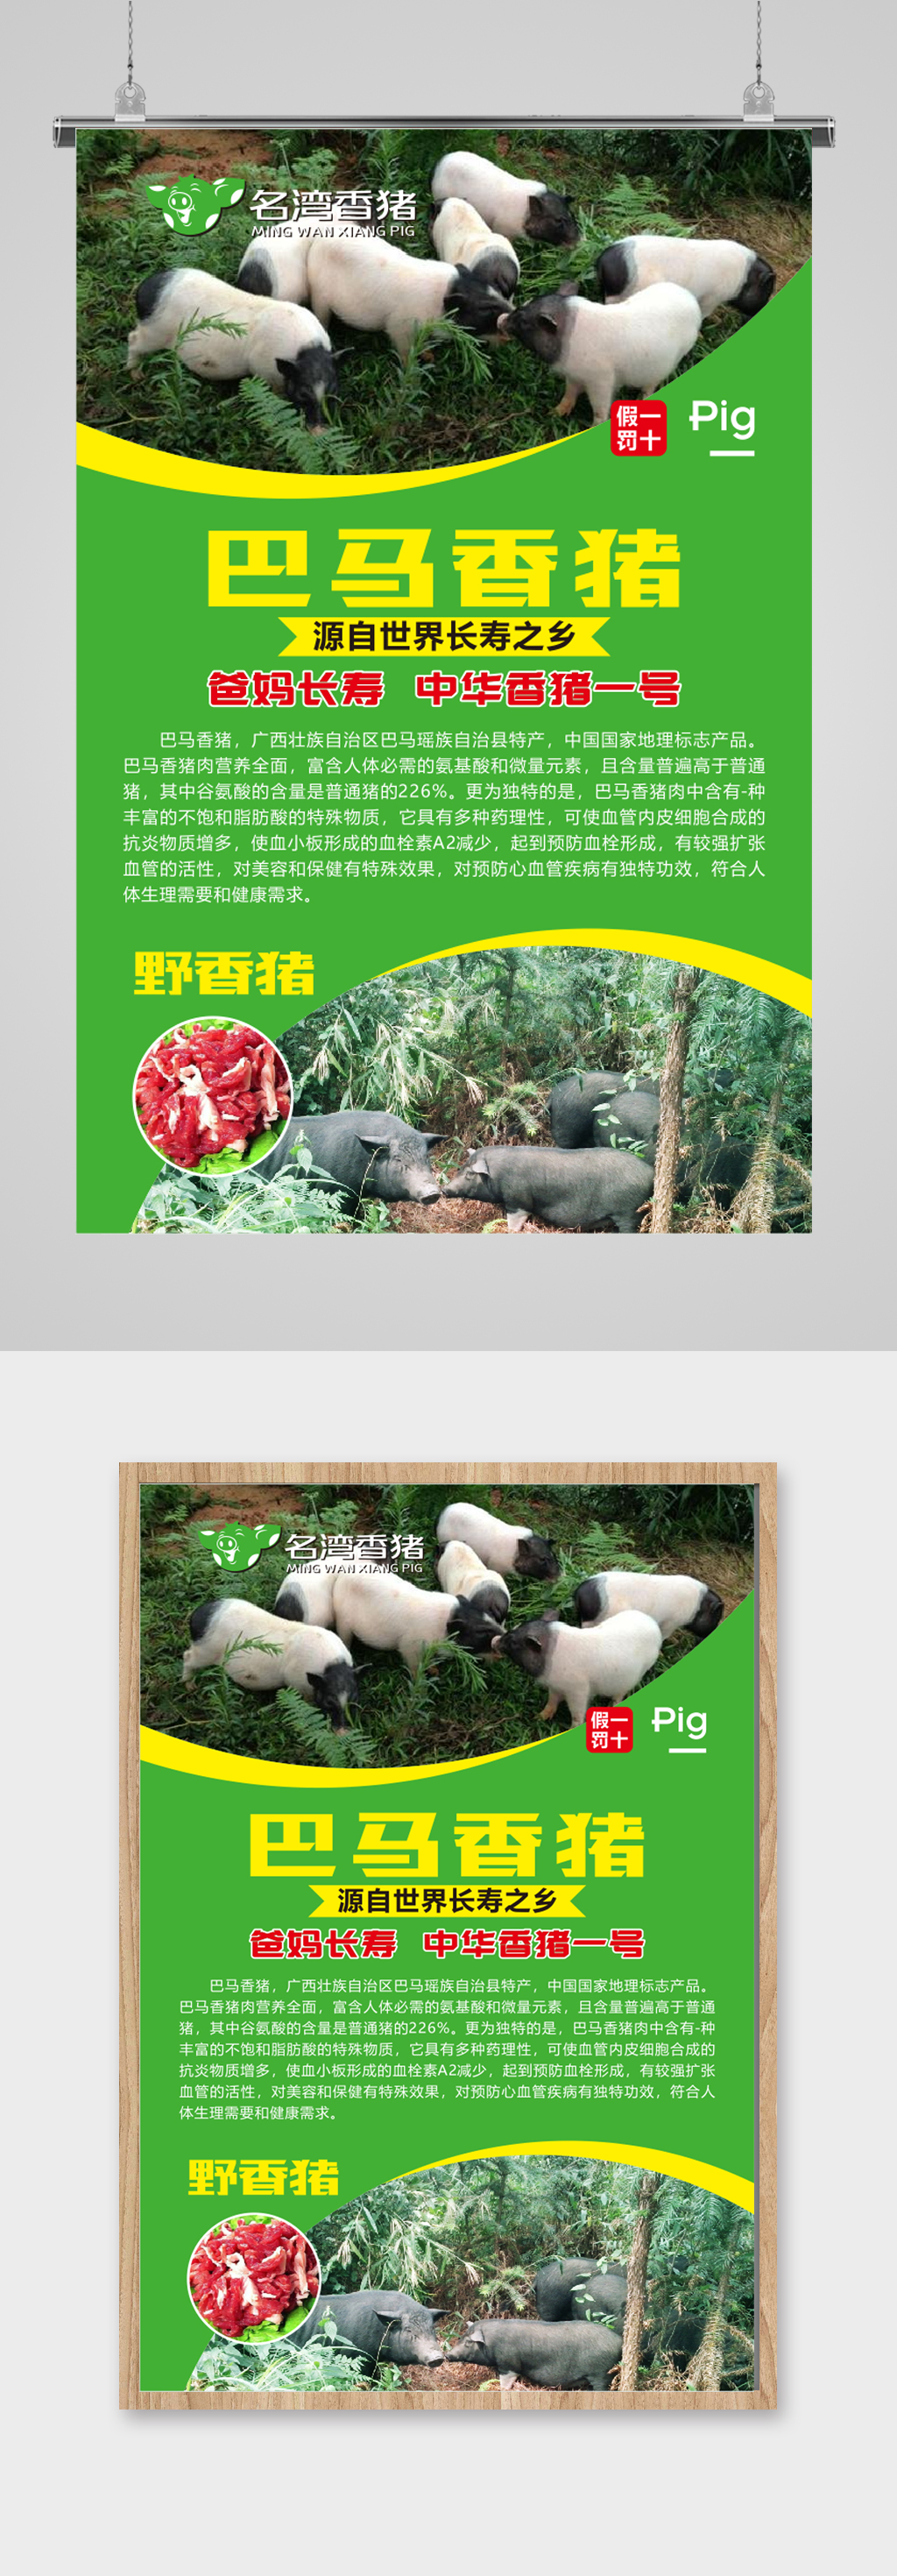 农家有机土猪肉海报立即下载品质健康绿色健康猪肉品质土猪立即下载